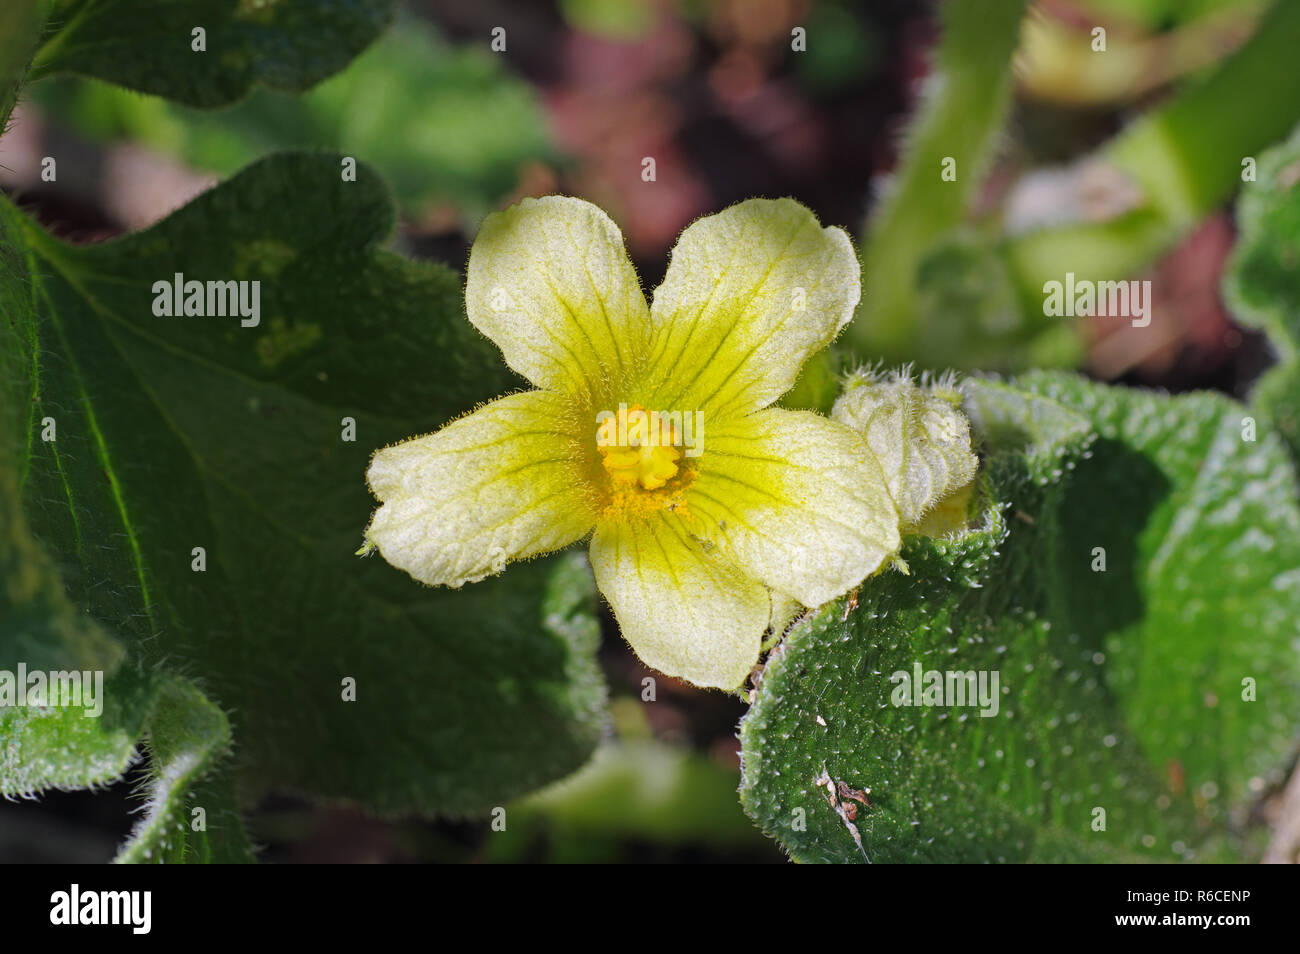 flowers of Ecballium elaterium, the Squirting cucumber, family Cucurbitaceae Stock Photo